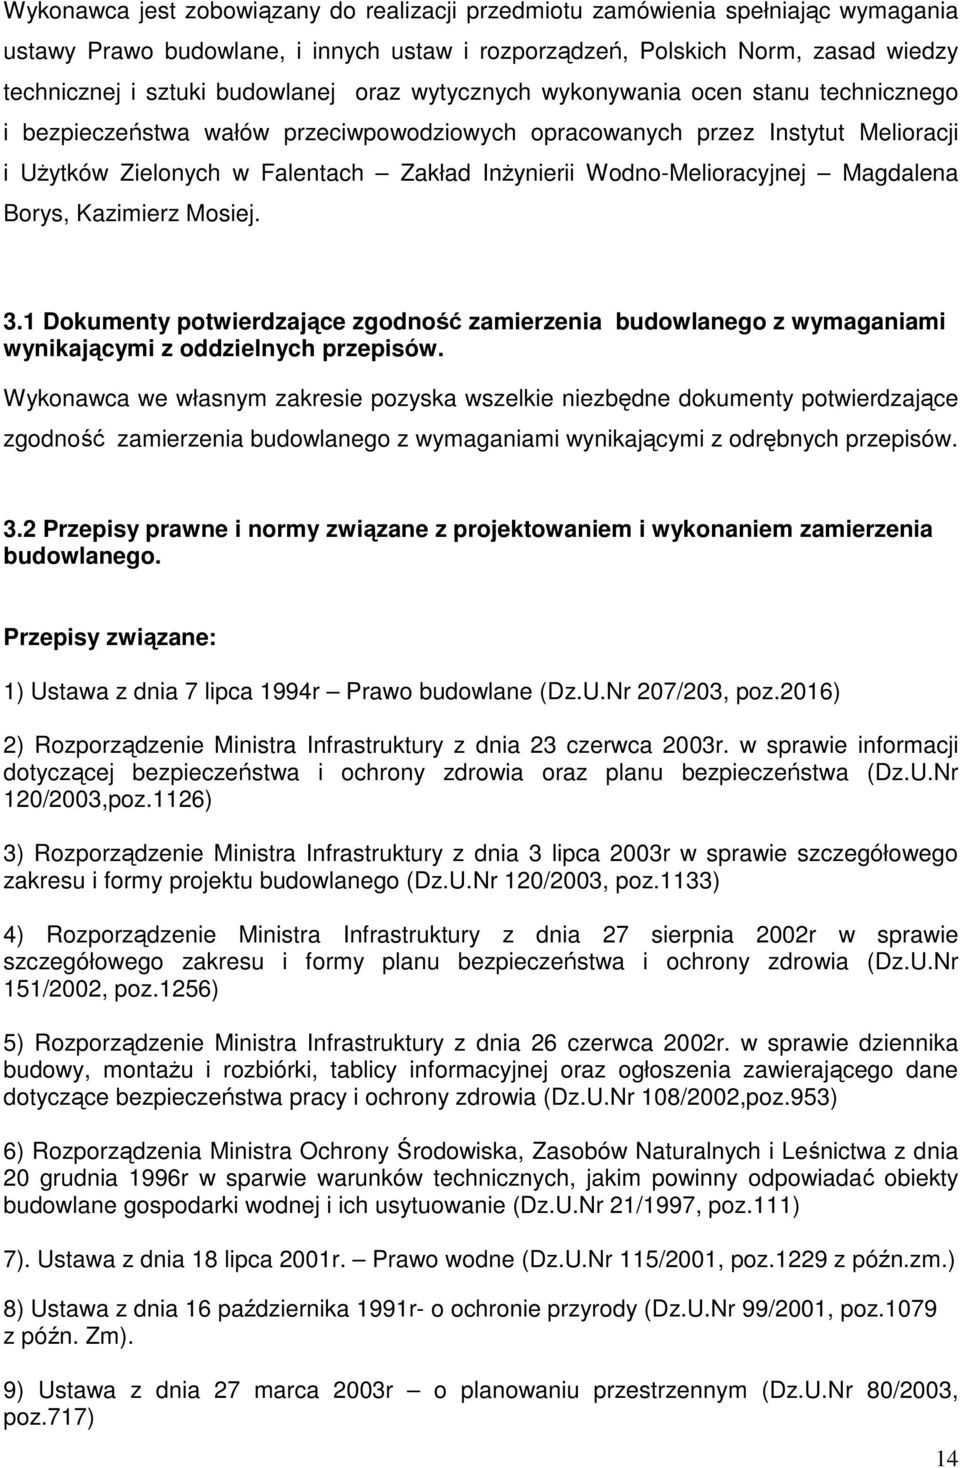 Wodno-Melioracyjnej Magdalena Borys, Kazimierz Mosiej. 3.1 Dokumenty potwierdzające zgodność zamierzenia budowlanego z wymaganiami wynikającymi z oddzielnych przepisów.